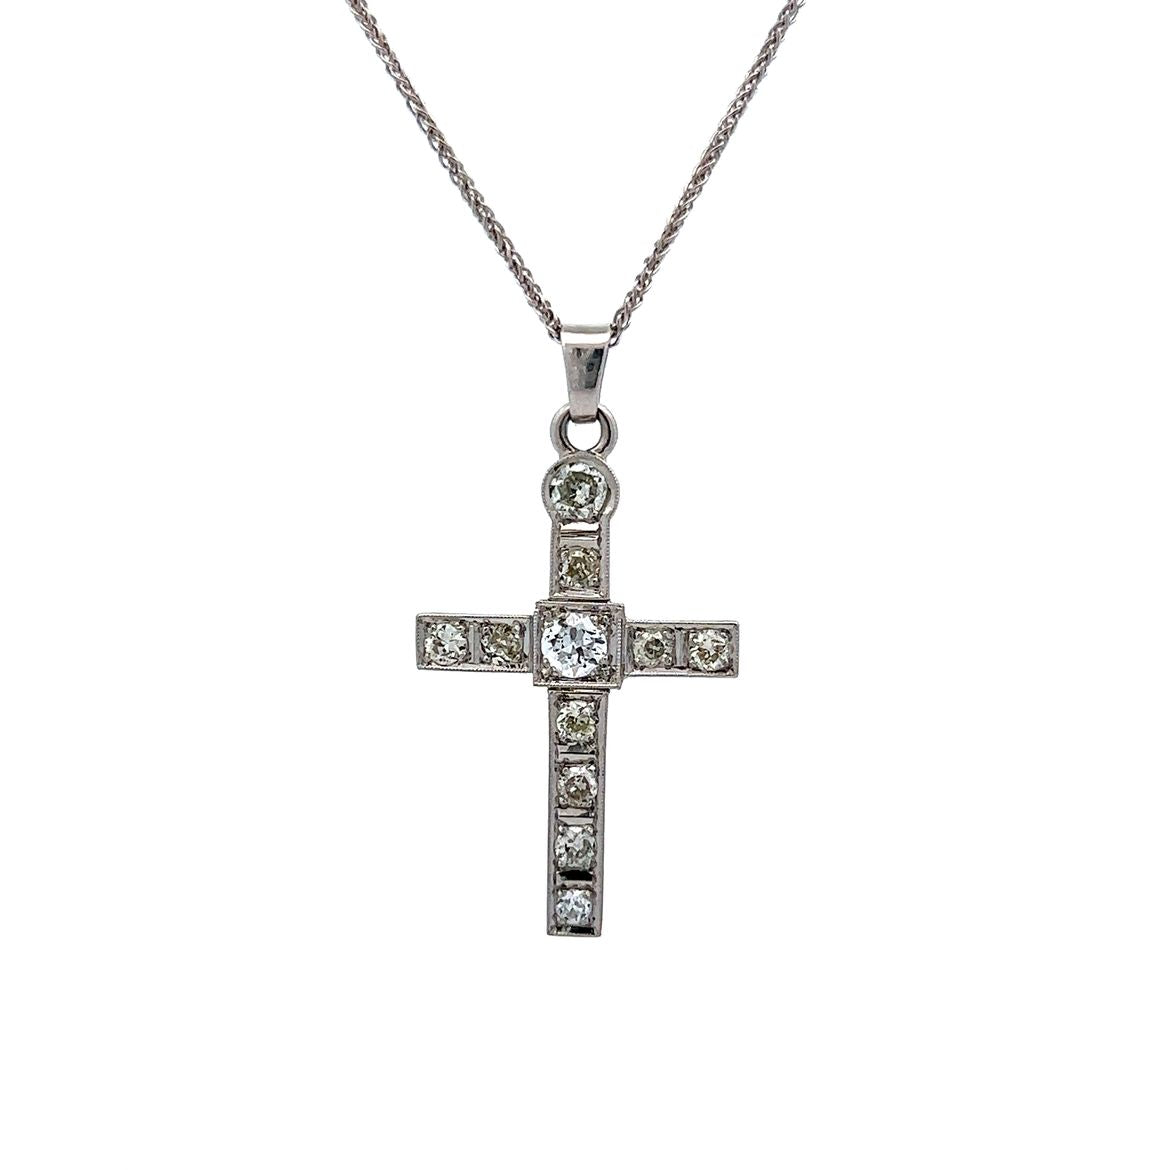 Antique Diamond Cross Pendant in 18k White Gold